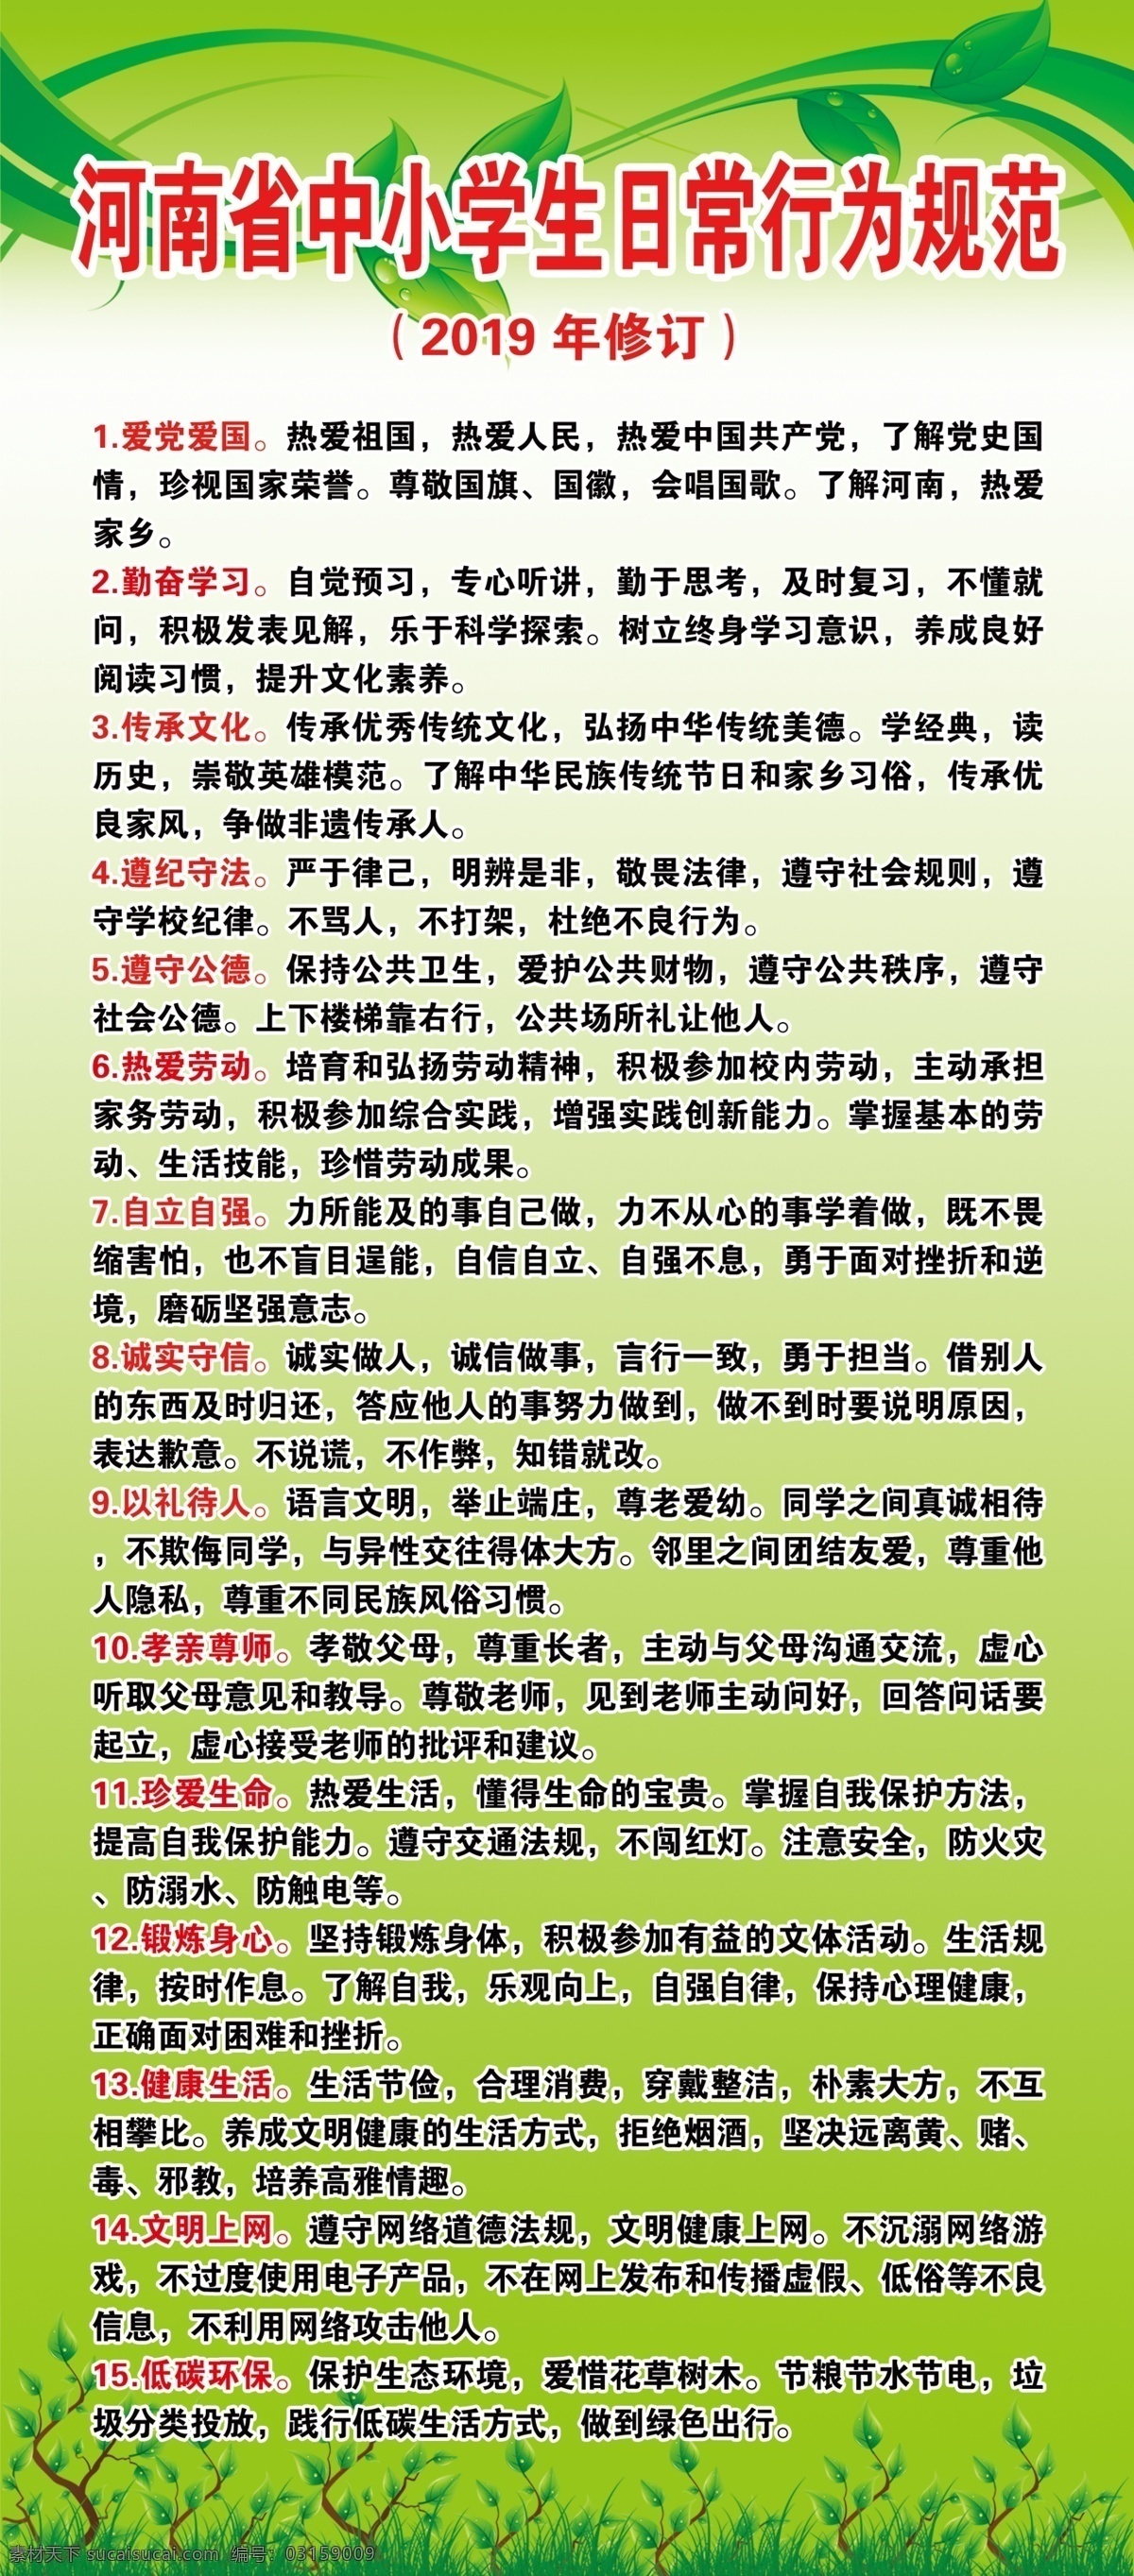 河南省 中小学生 日常 行为规范 日常行为规范 2019 年 修订 爱国爱党